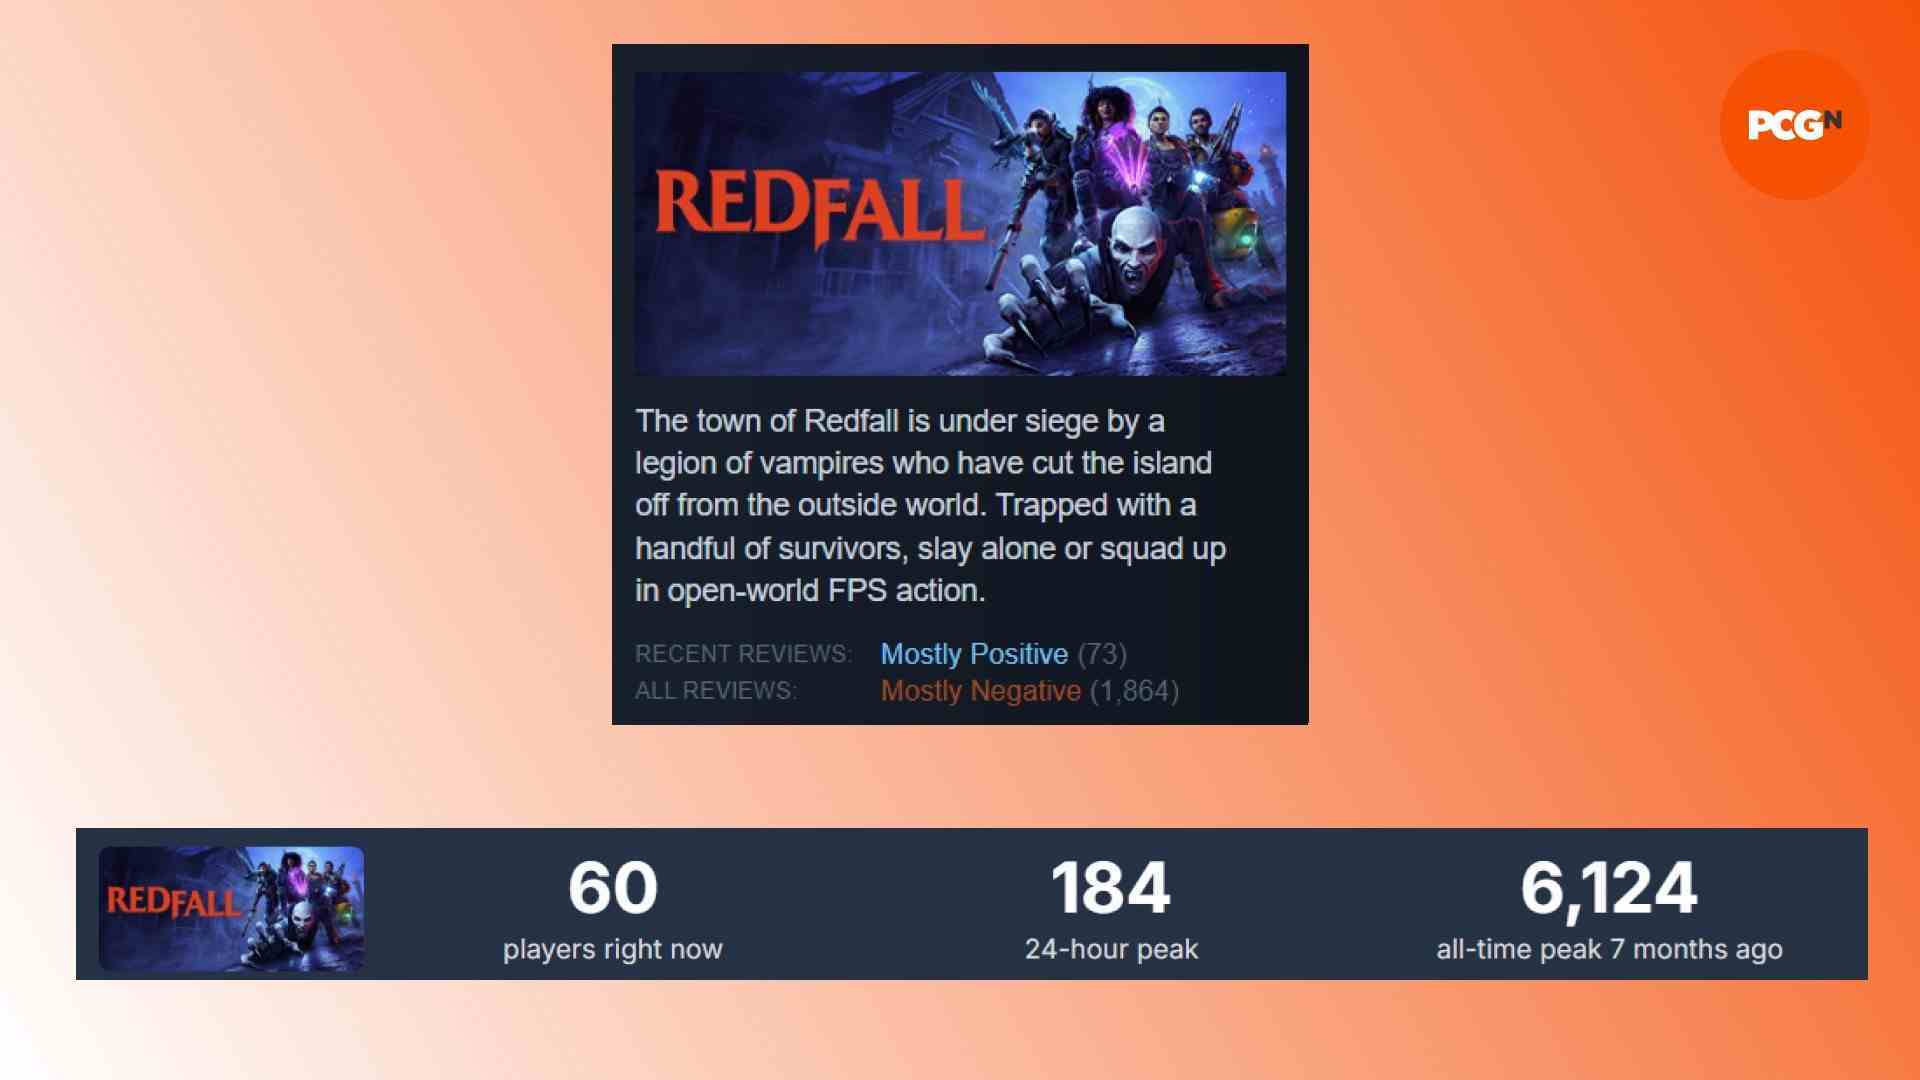 Redfall Steam incelemeleri: Arkane ve Bethesda vampir oyunu Redfall için Steam verilerinin karşılaştırılması